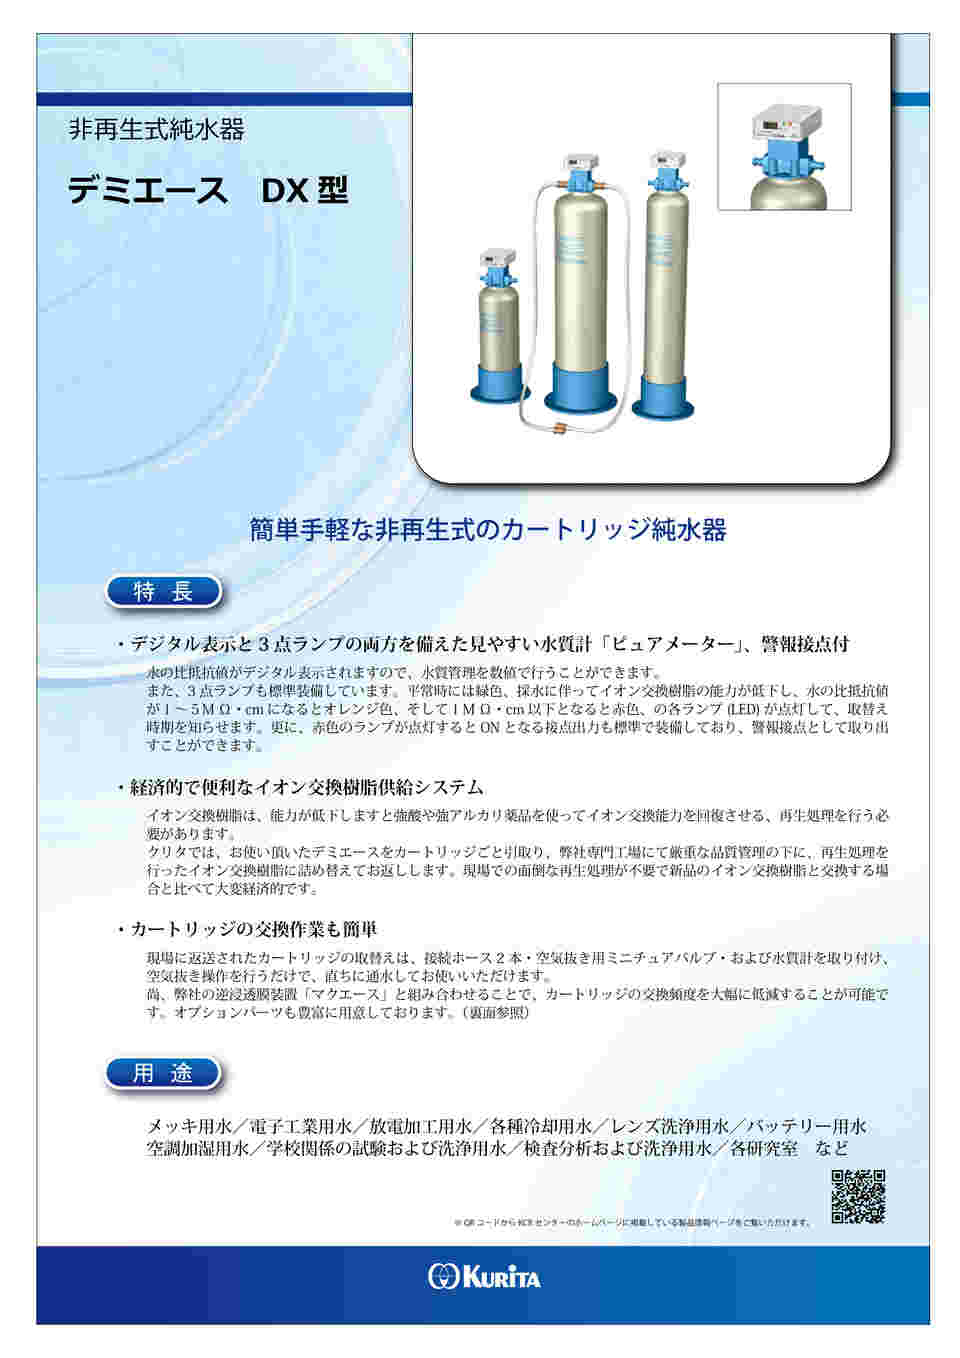 1-3134-02 カートリッジ純水器 デミエース DX-10型 【AXEL】 アズワン